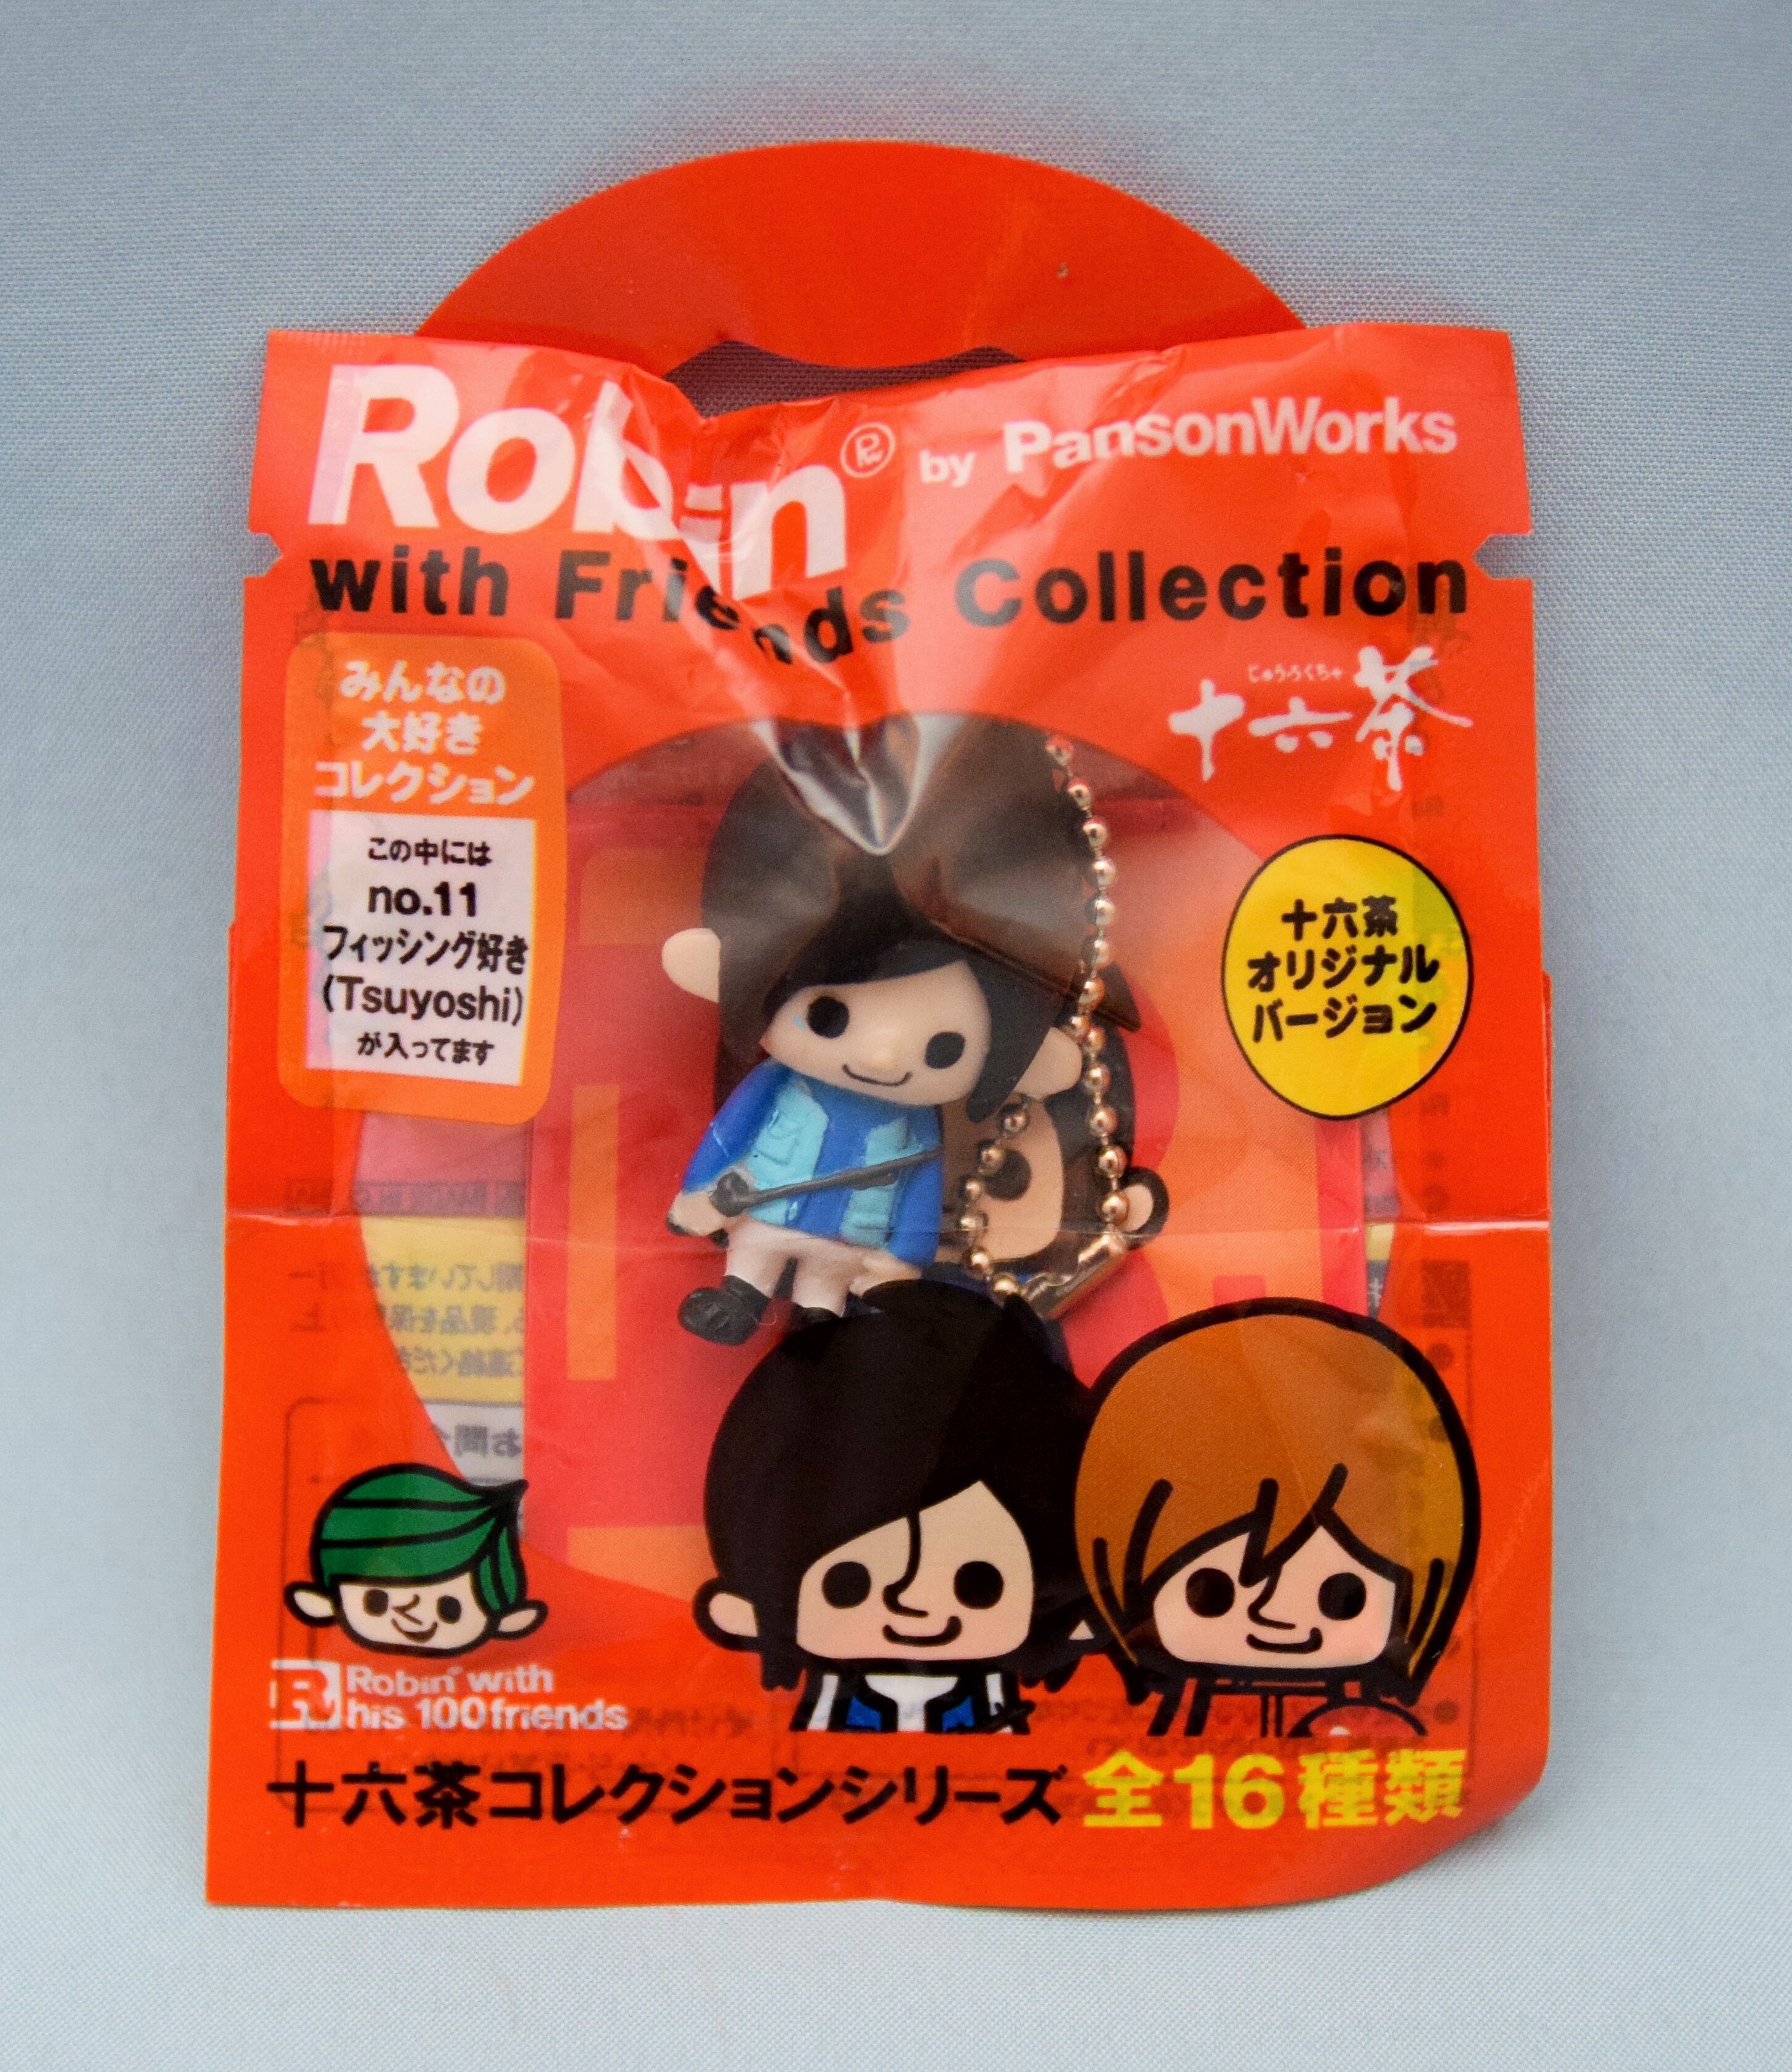 ノベルティグッズ十六茶×Robin with Friends Collection KinKi ...